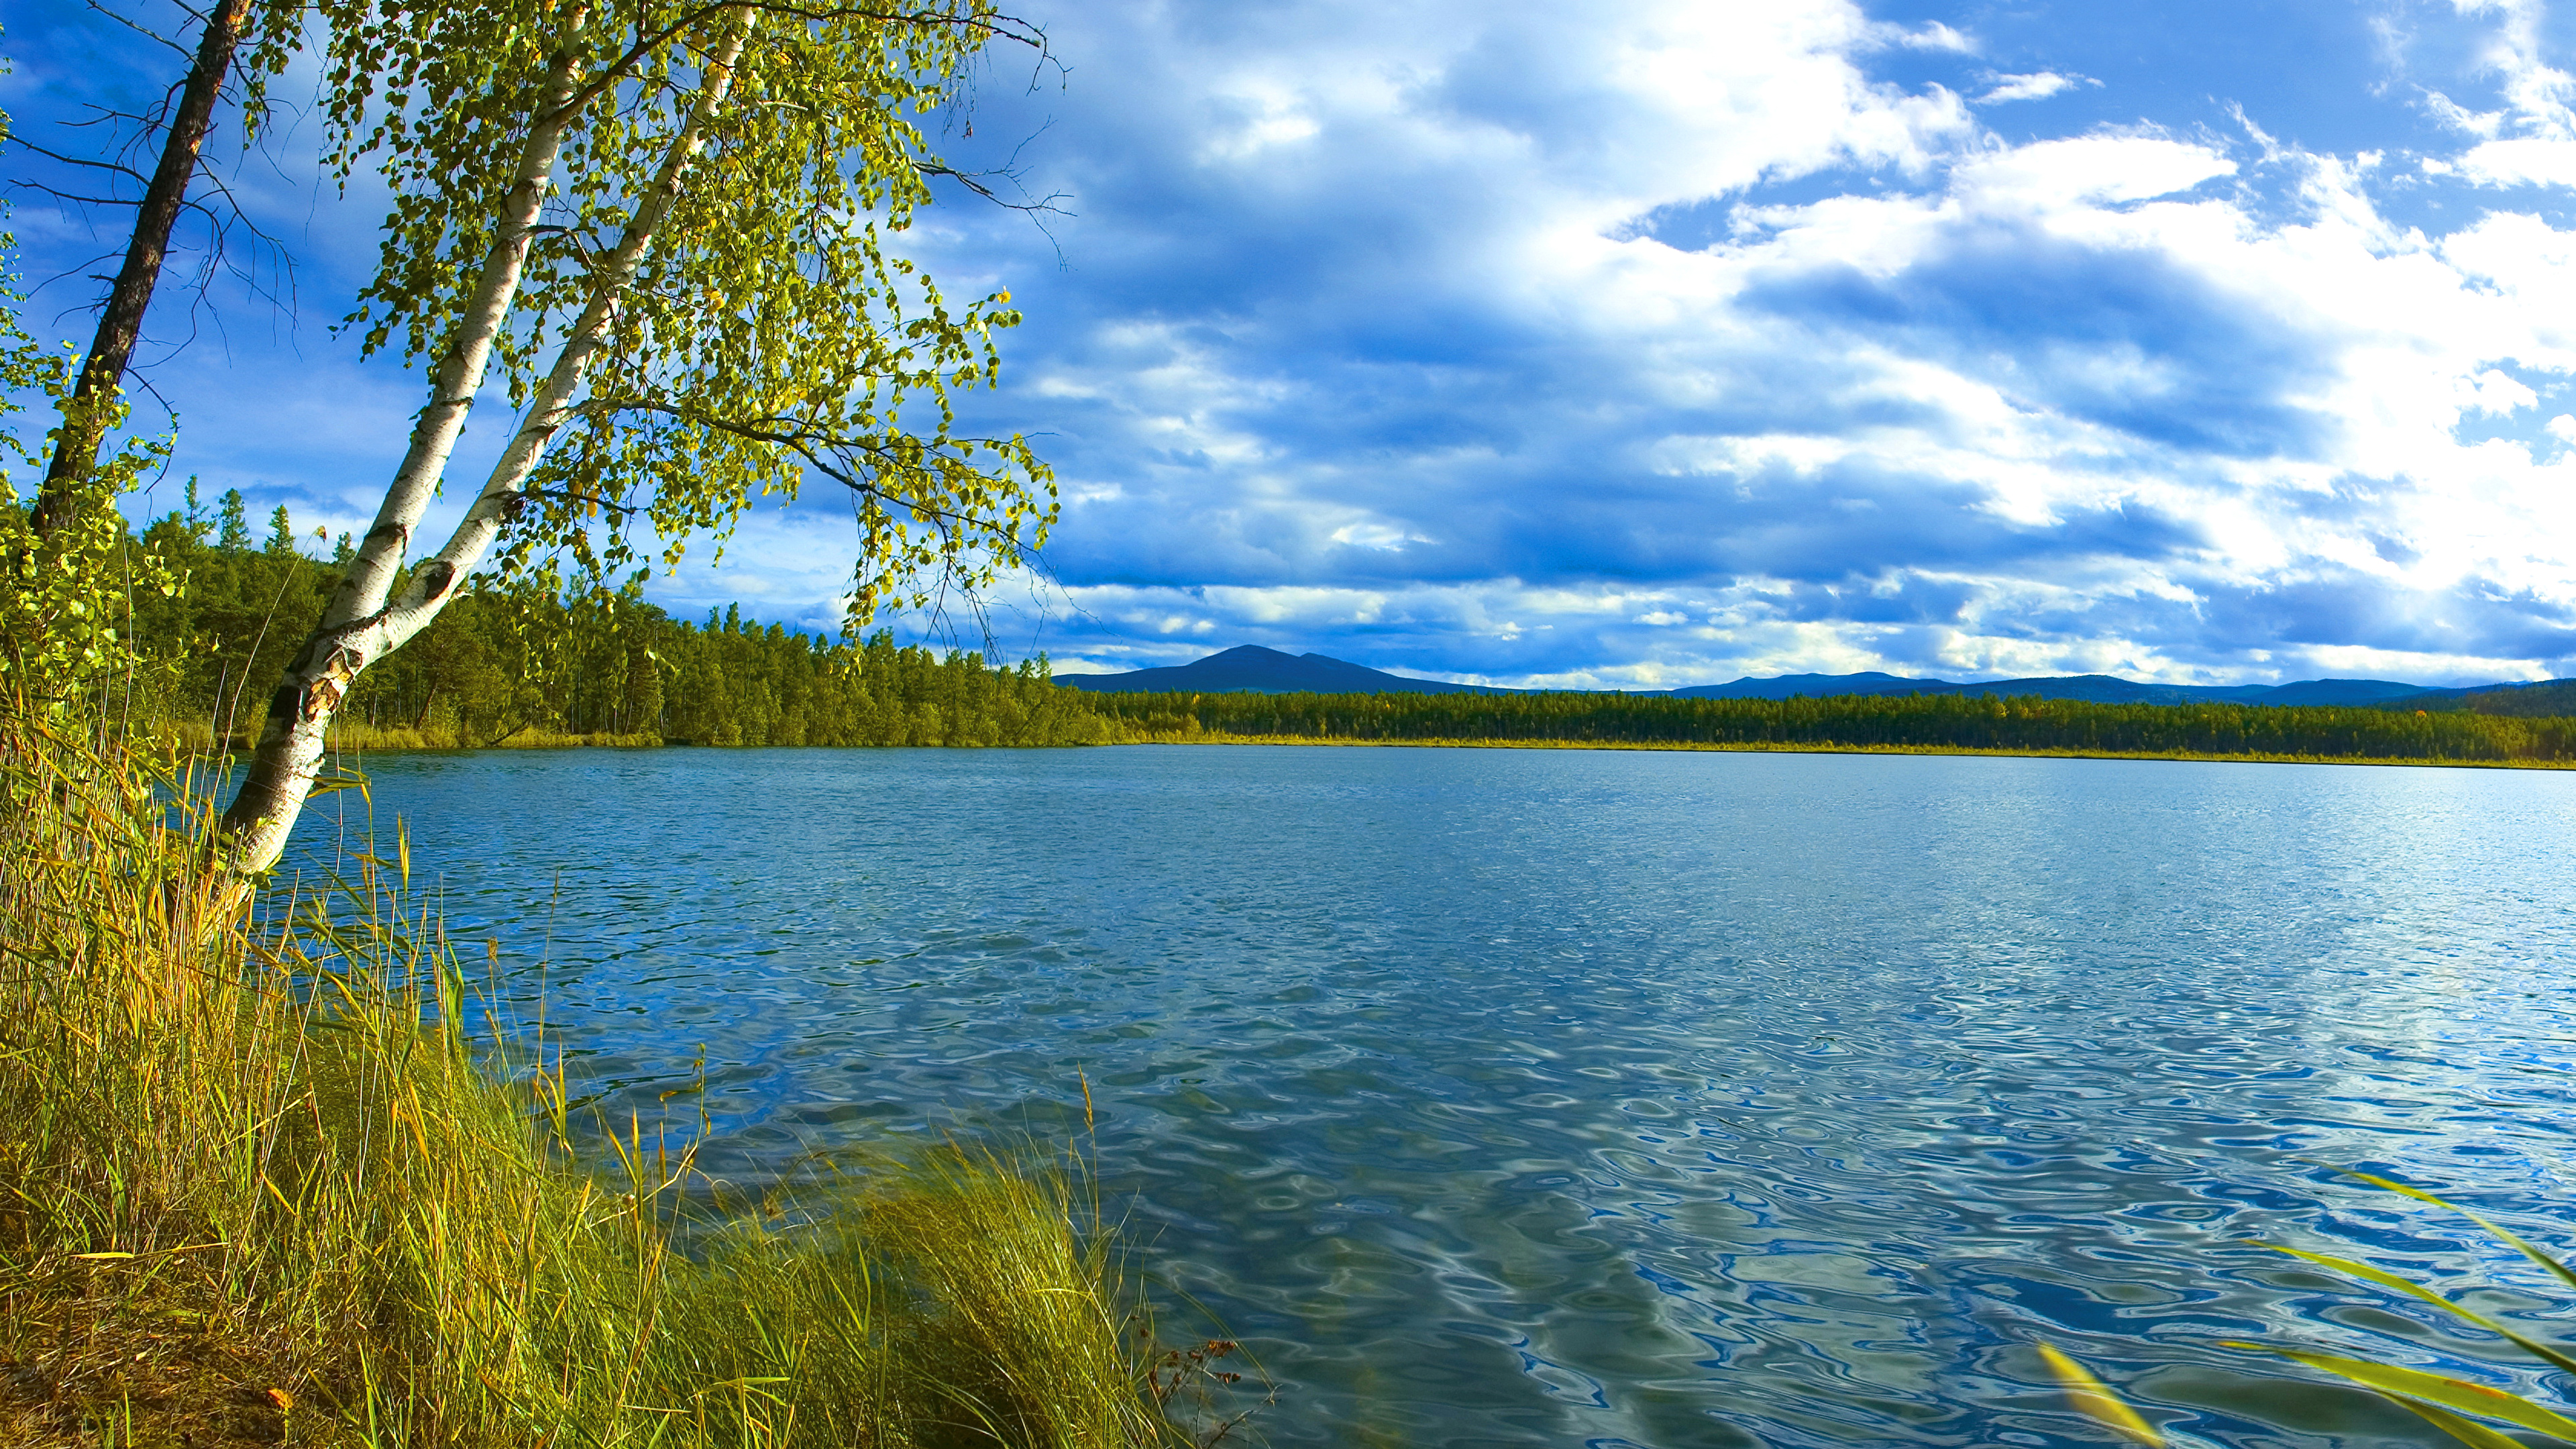 壁紙 3840x2160 ロシア 風景写真 湖 空 Baikal 木 草 自然 ダウンロード 写真